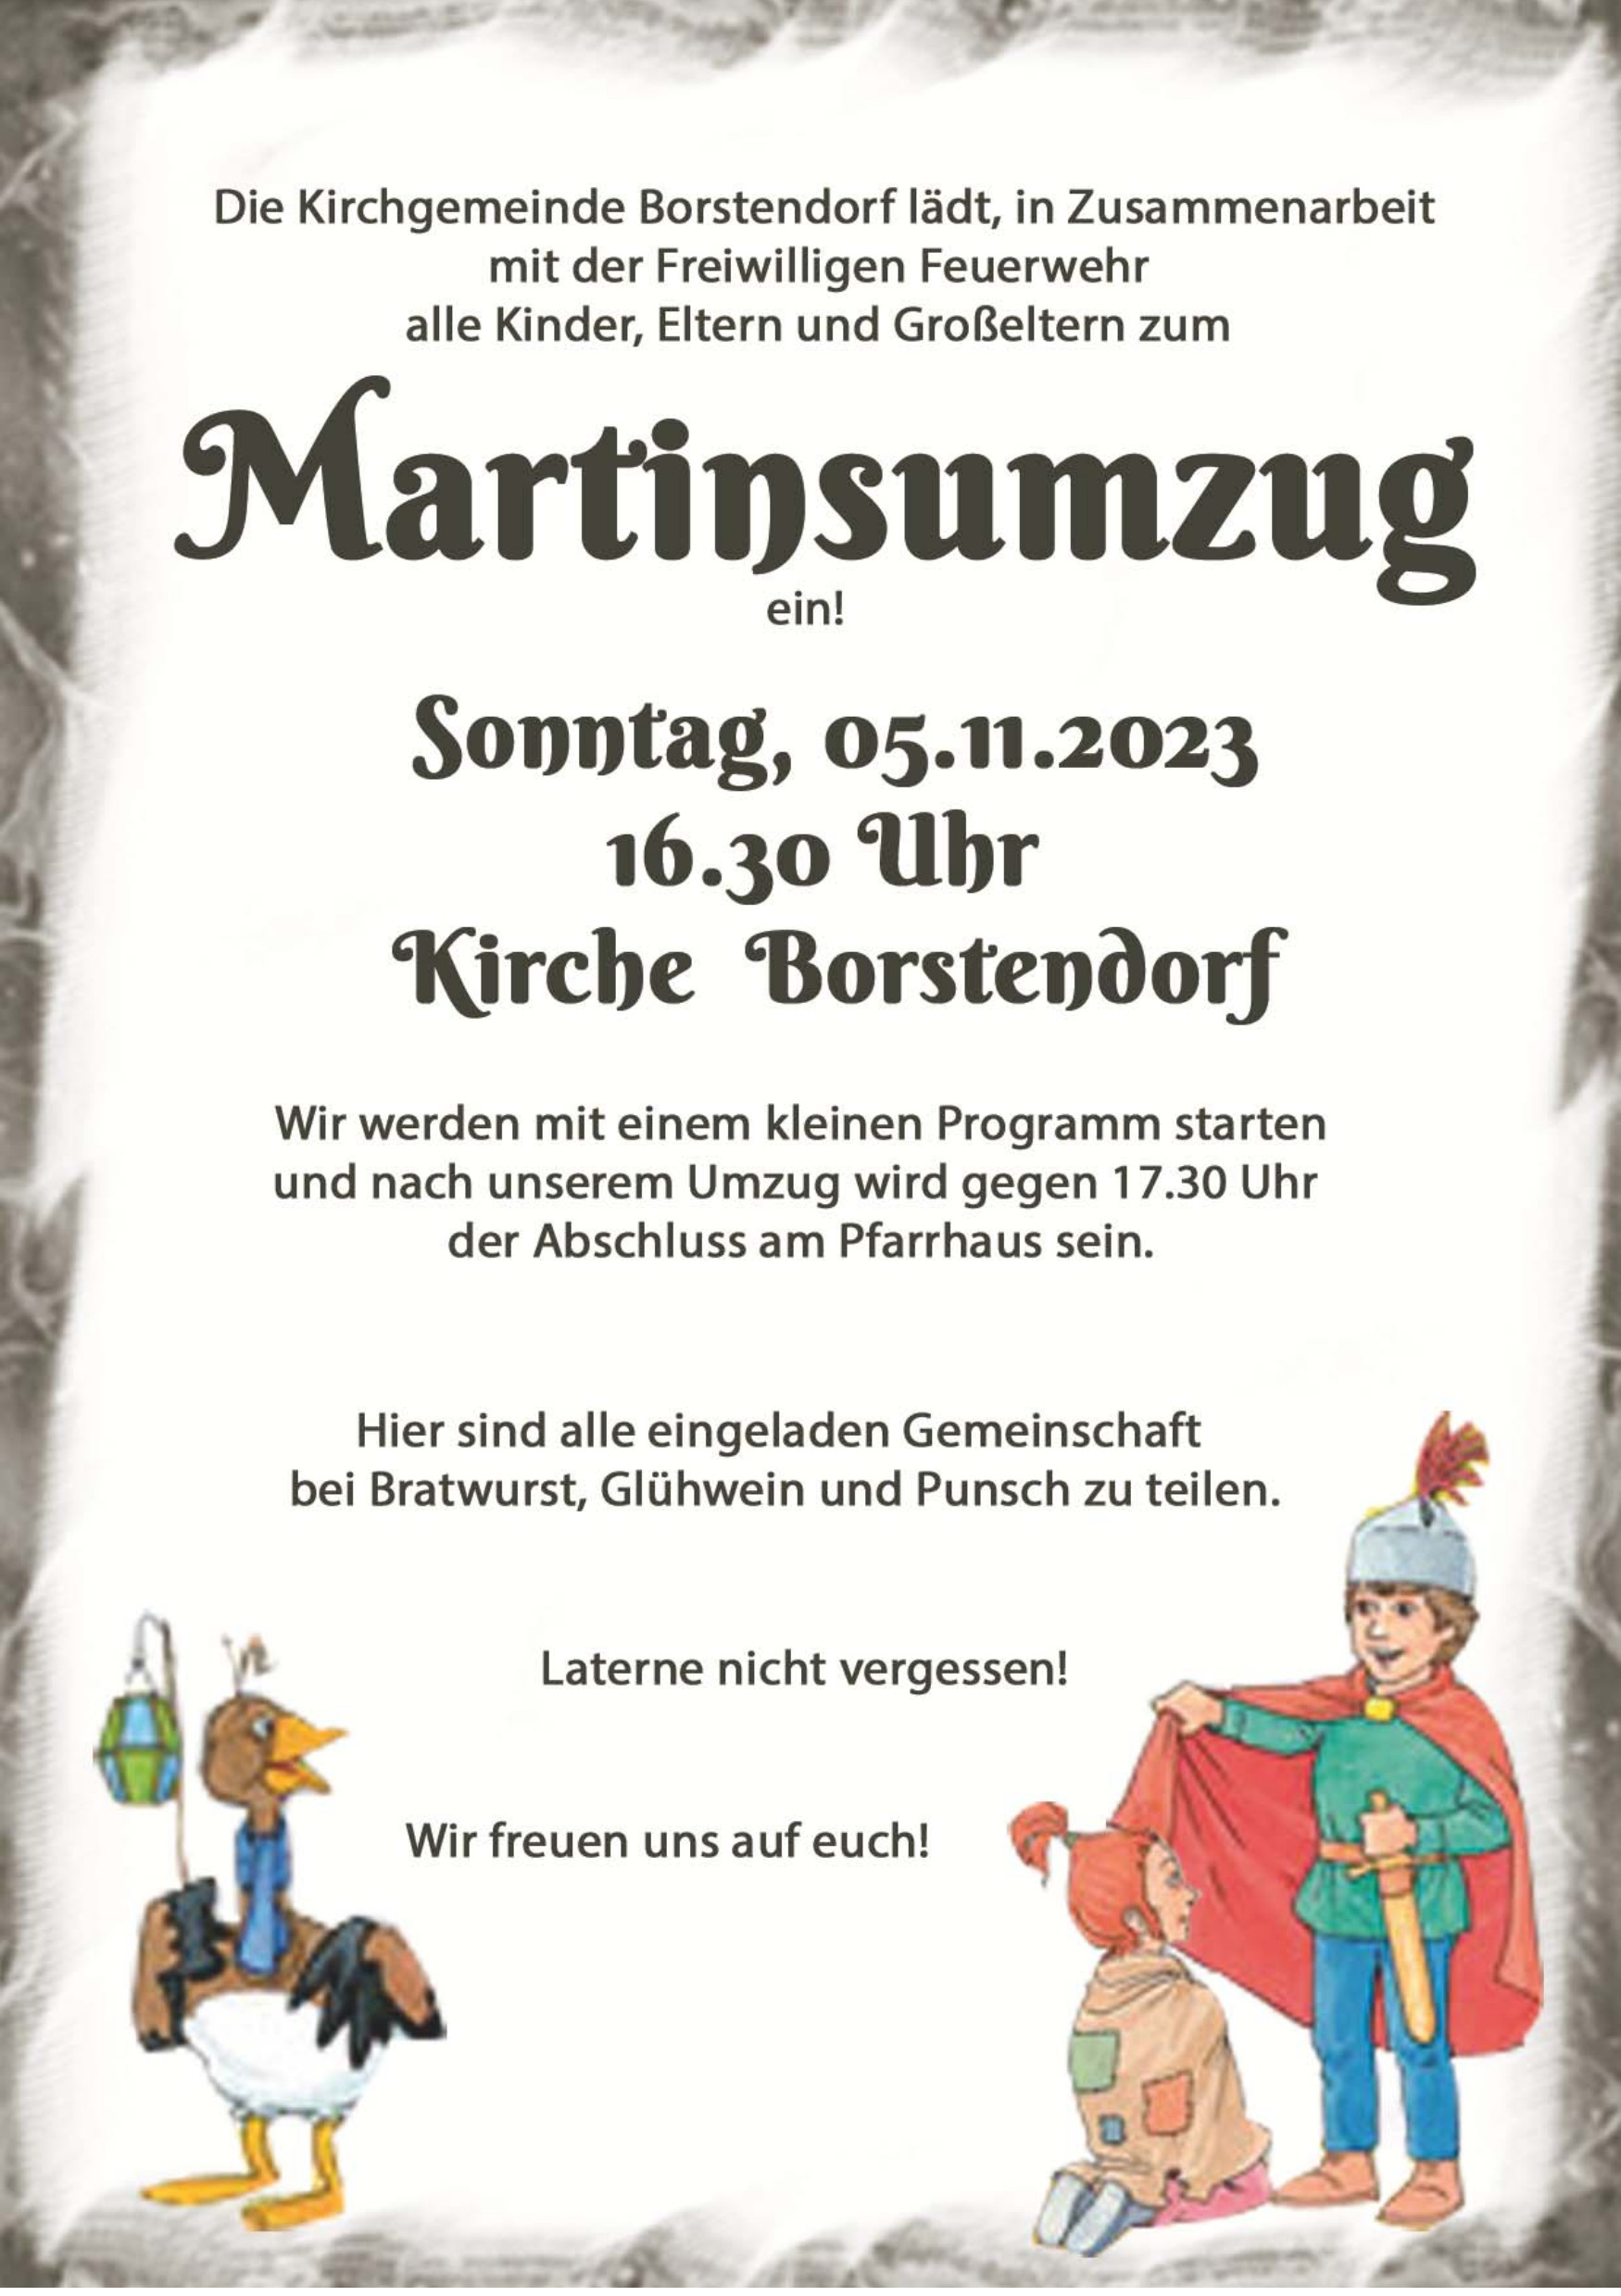 St. Martinsumzug Borstendorf 5.11.2023